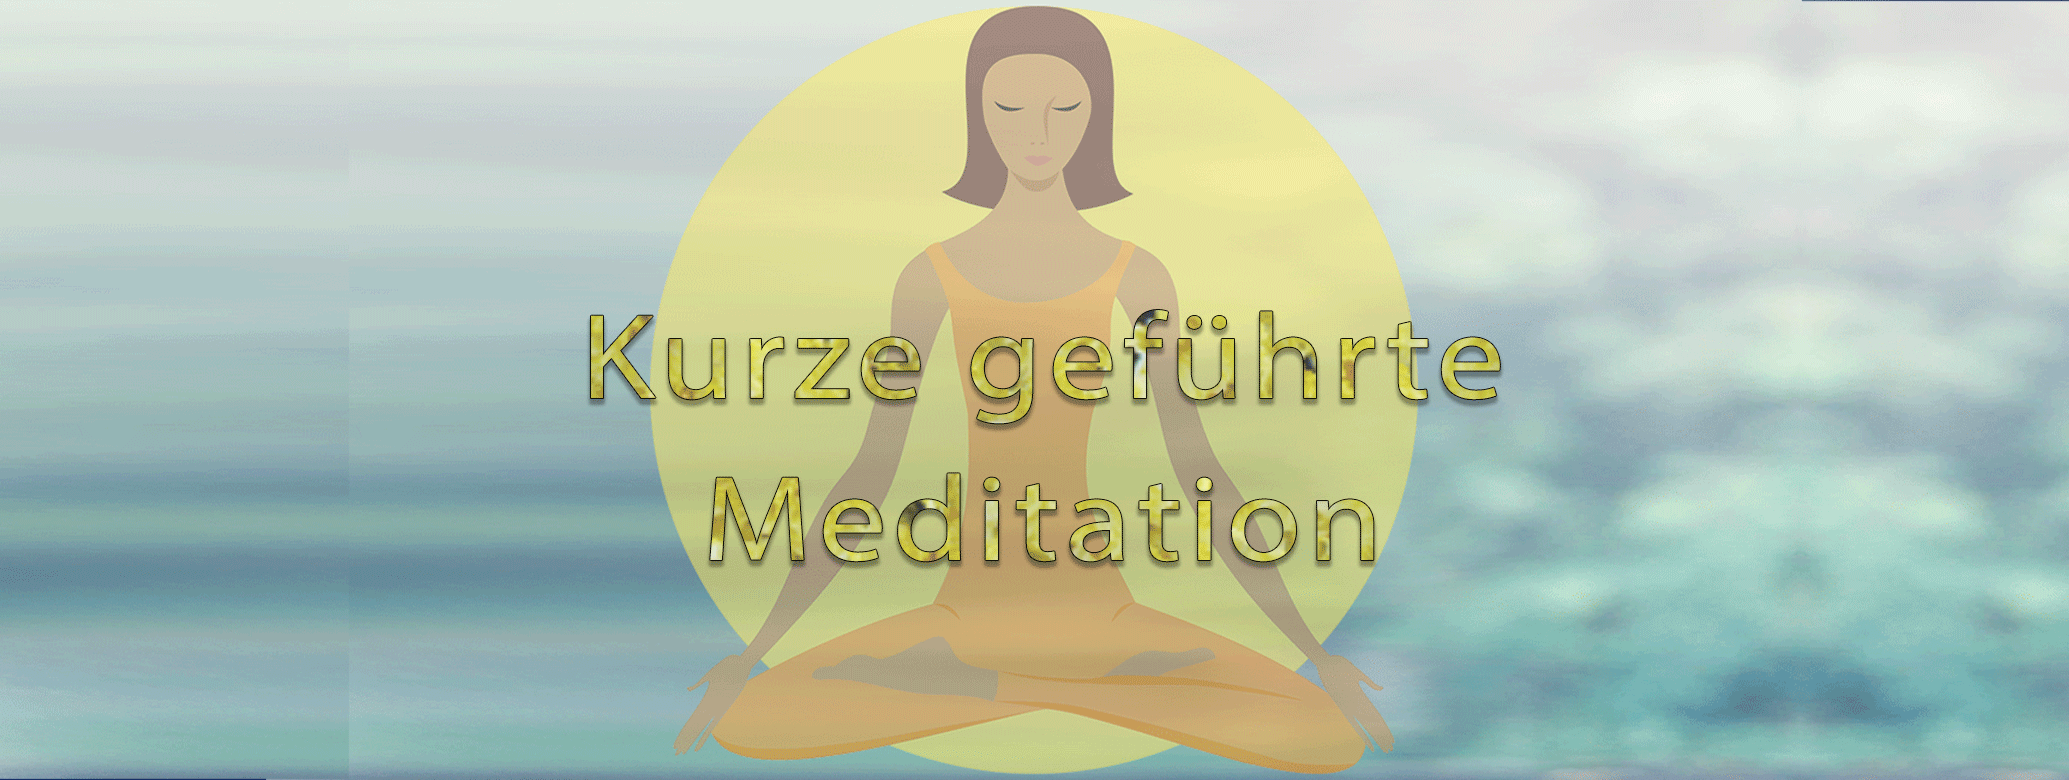 kurze geführte Abendmeditation - Meditation für Gesundheit mit Anleitung